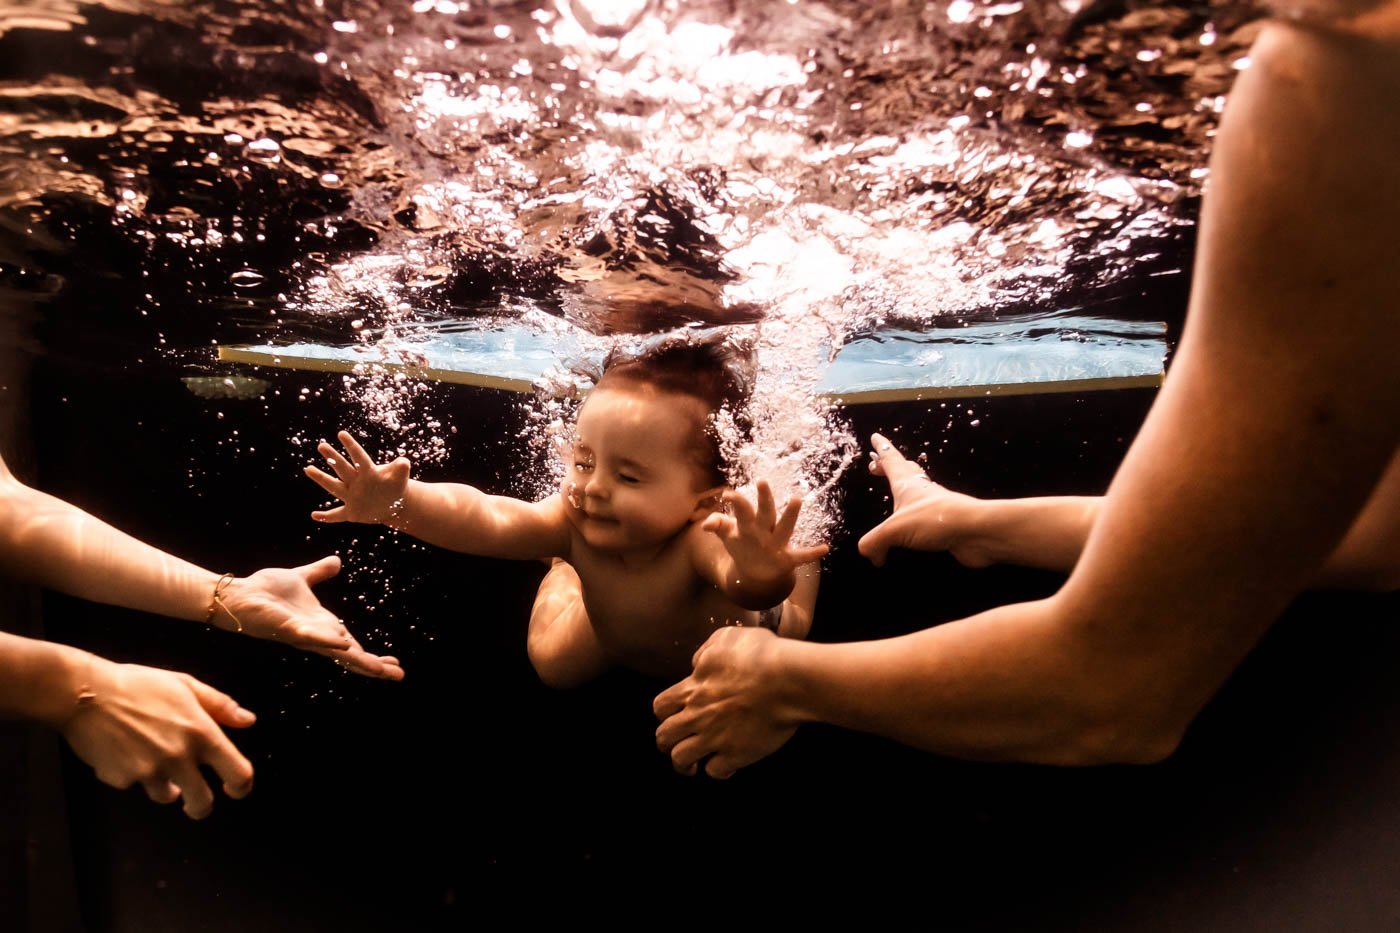 marie-landoin-photographe-bebe-nageur-aquatique-lyon-45.jpg